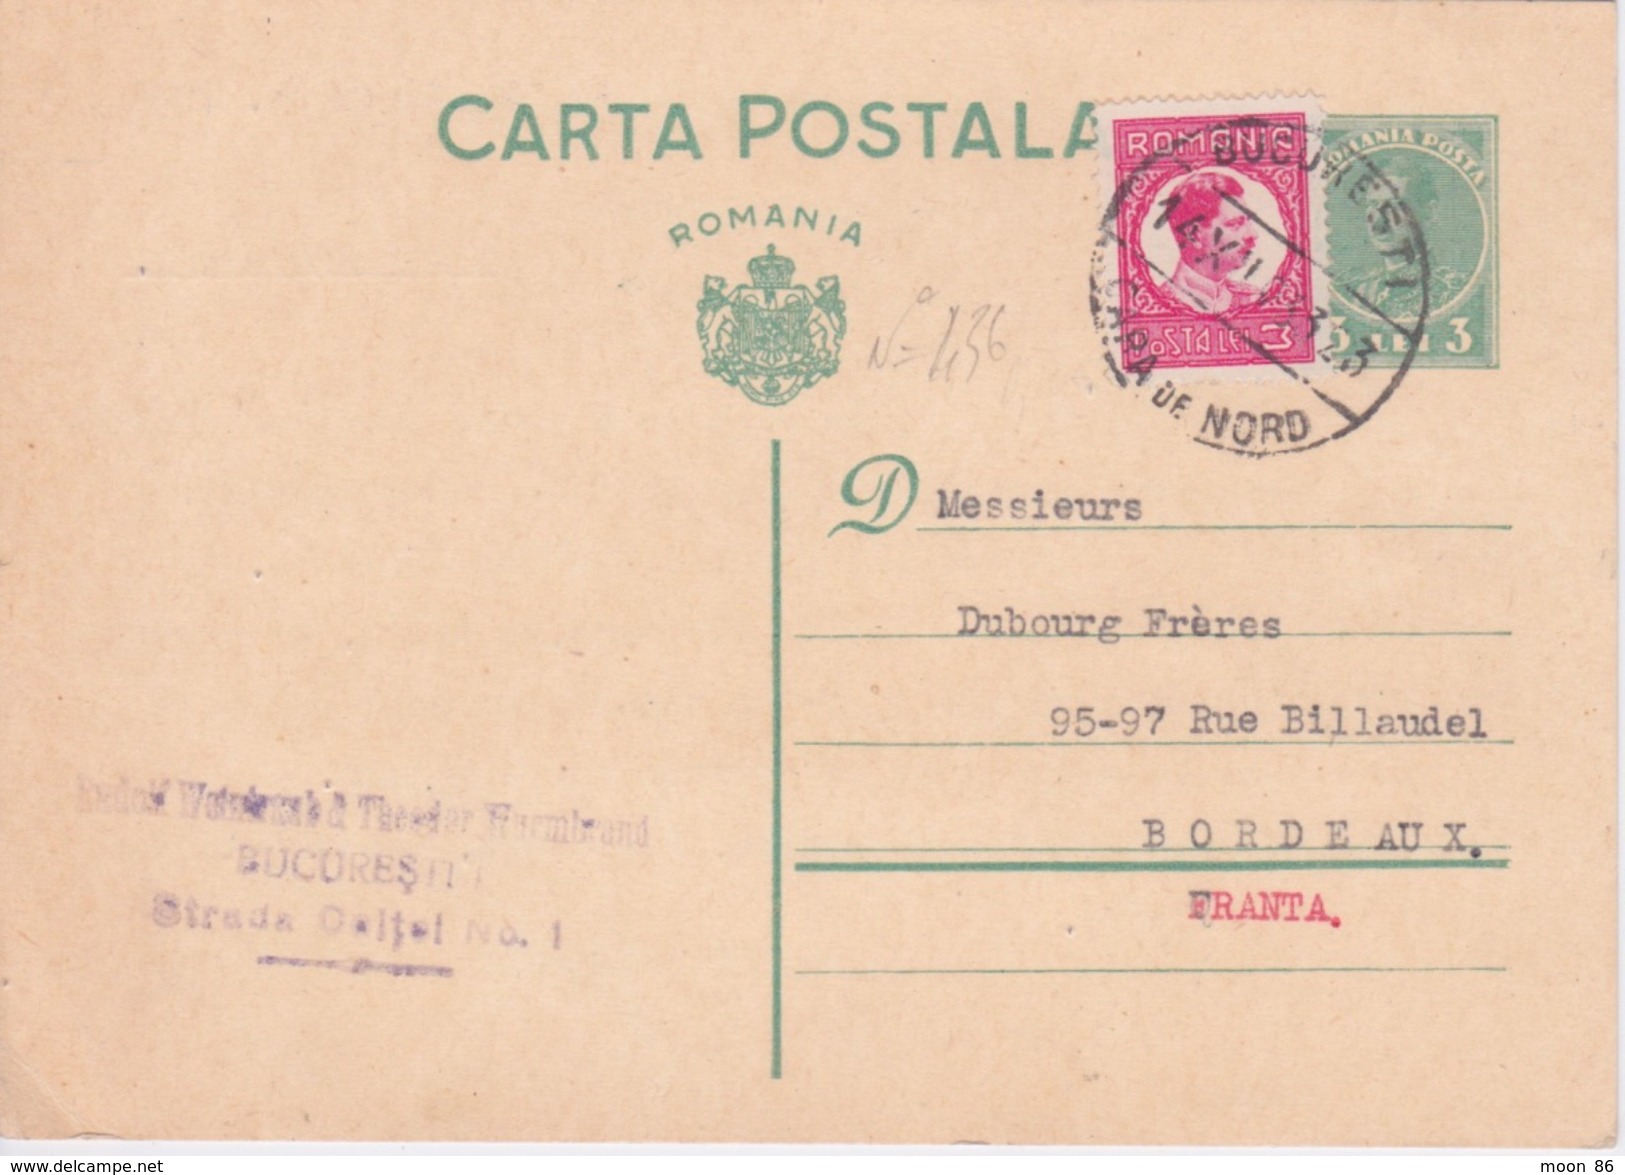 ROUMANIE - ENTIER POSTAL - 1933 - BUCAREST TO BORDEAUX - CACHET DE LA POSTE SUR TIMBRE N 436 - Postmark Collection